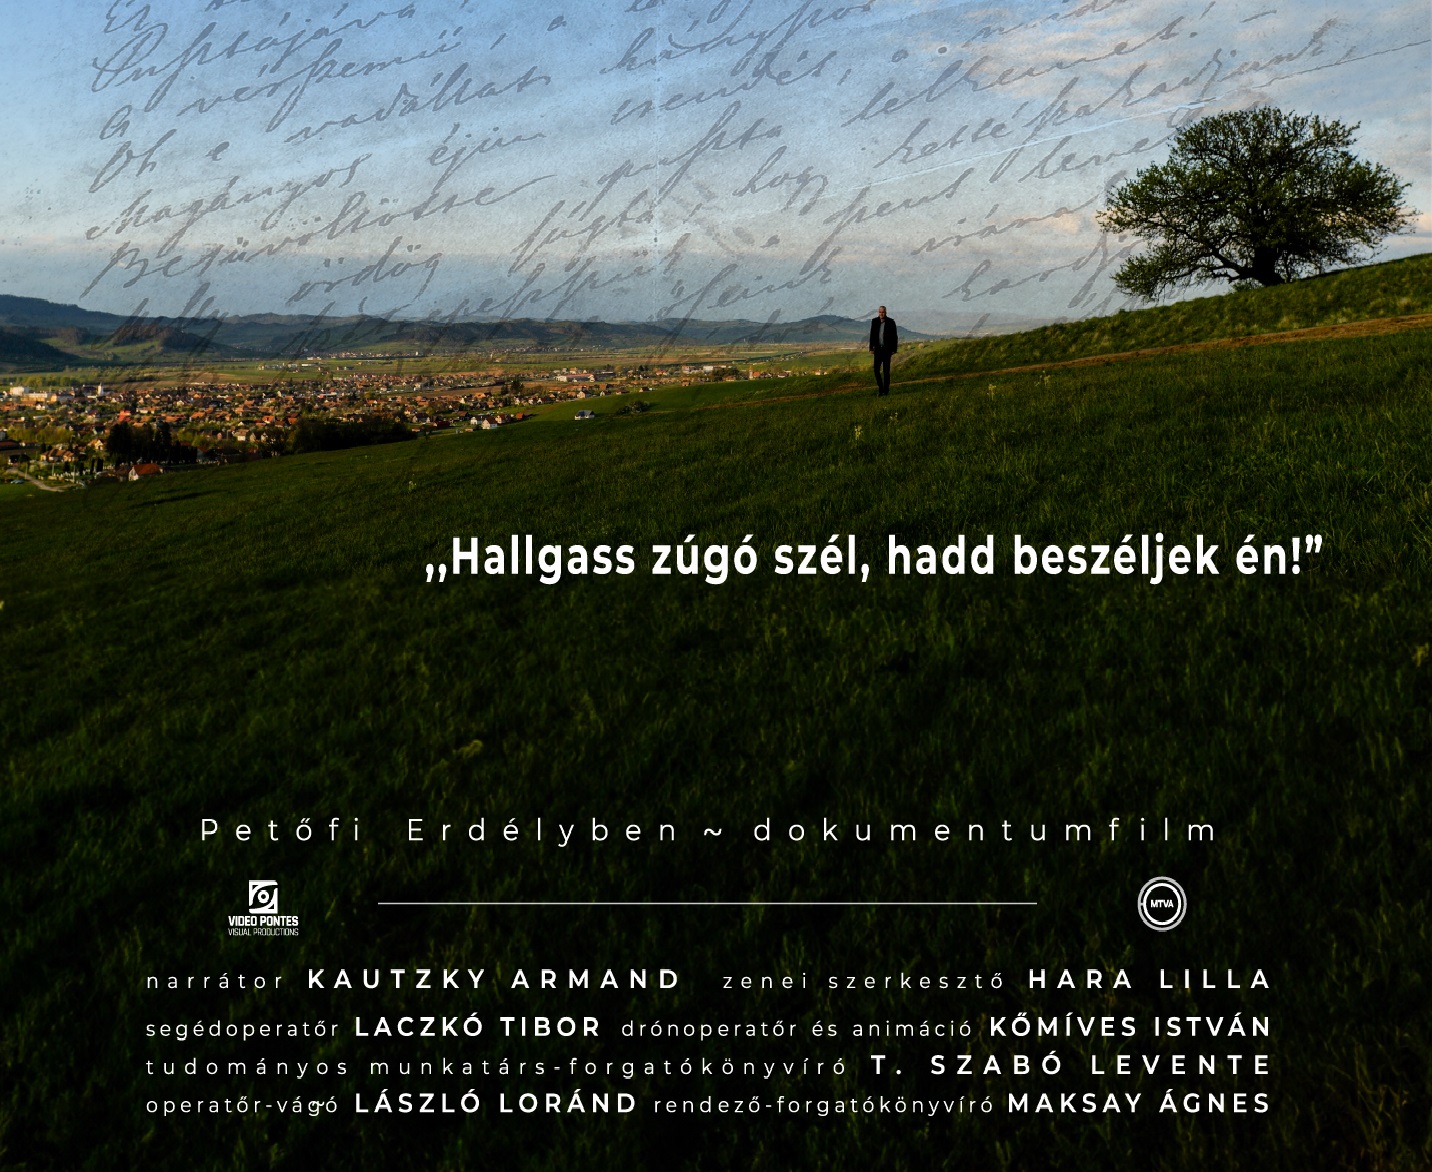 Petőfi Erdélyben című dokumentumfulm plakátja